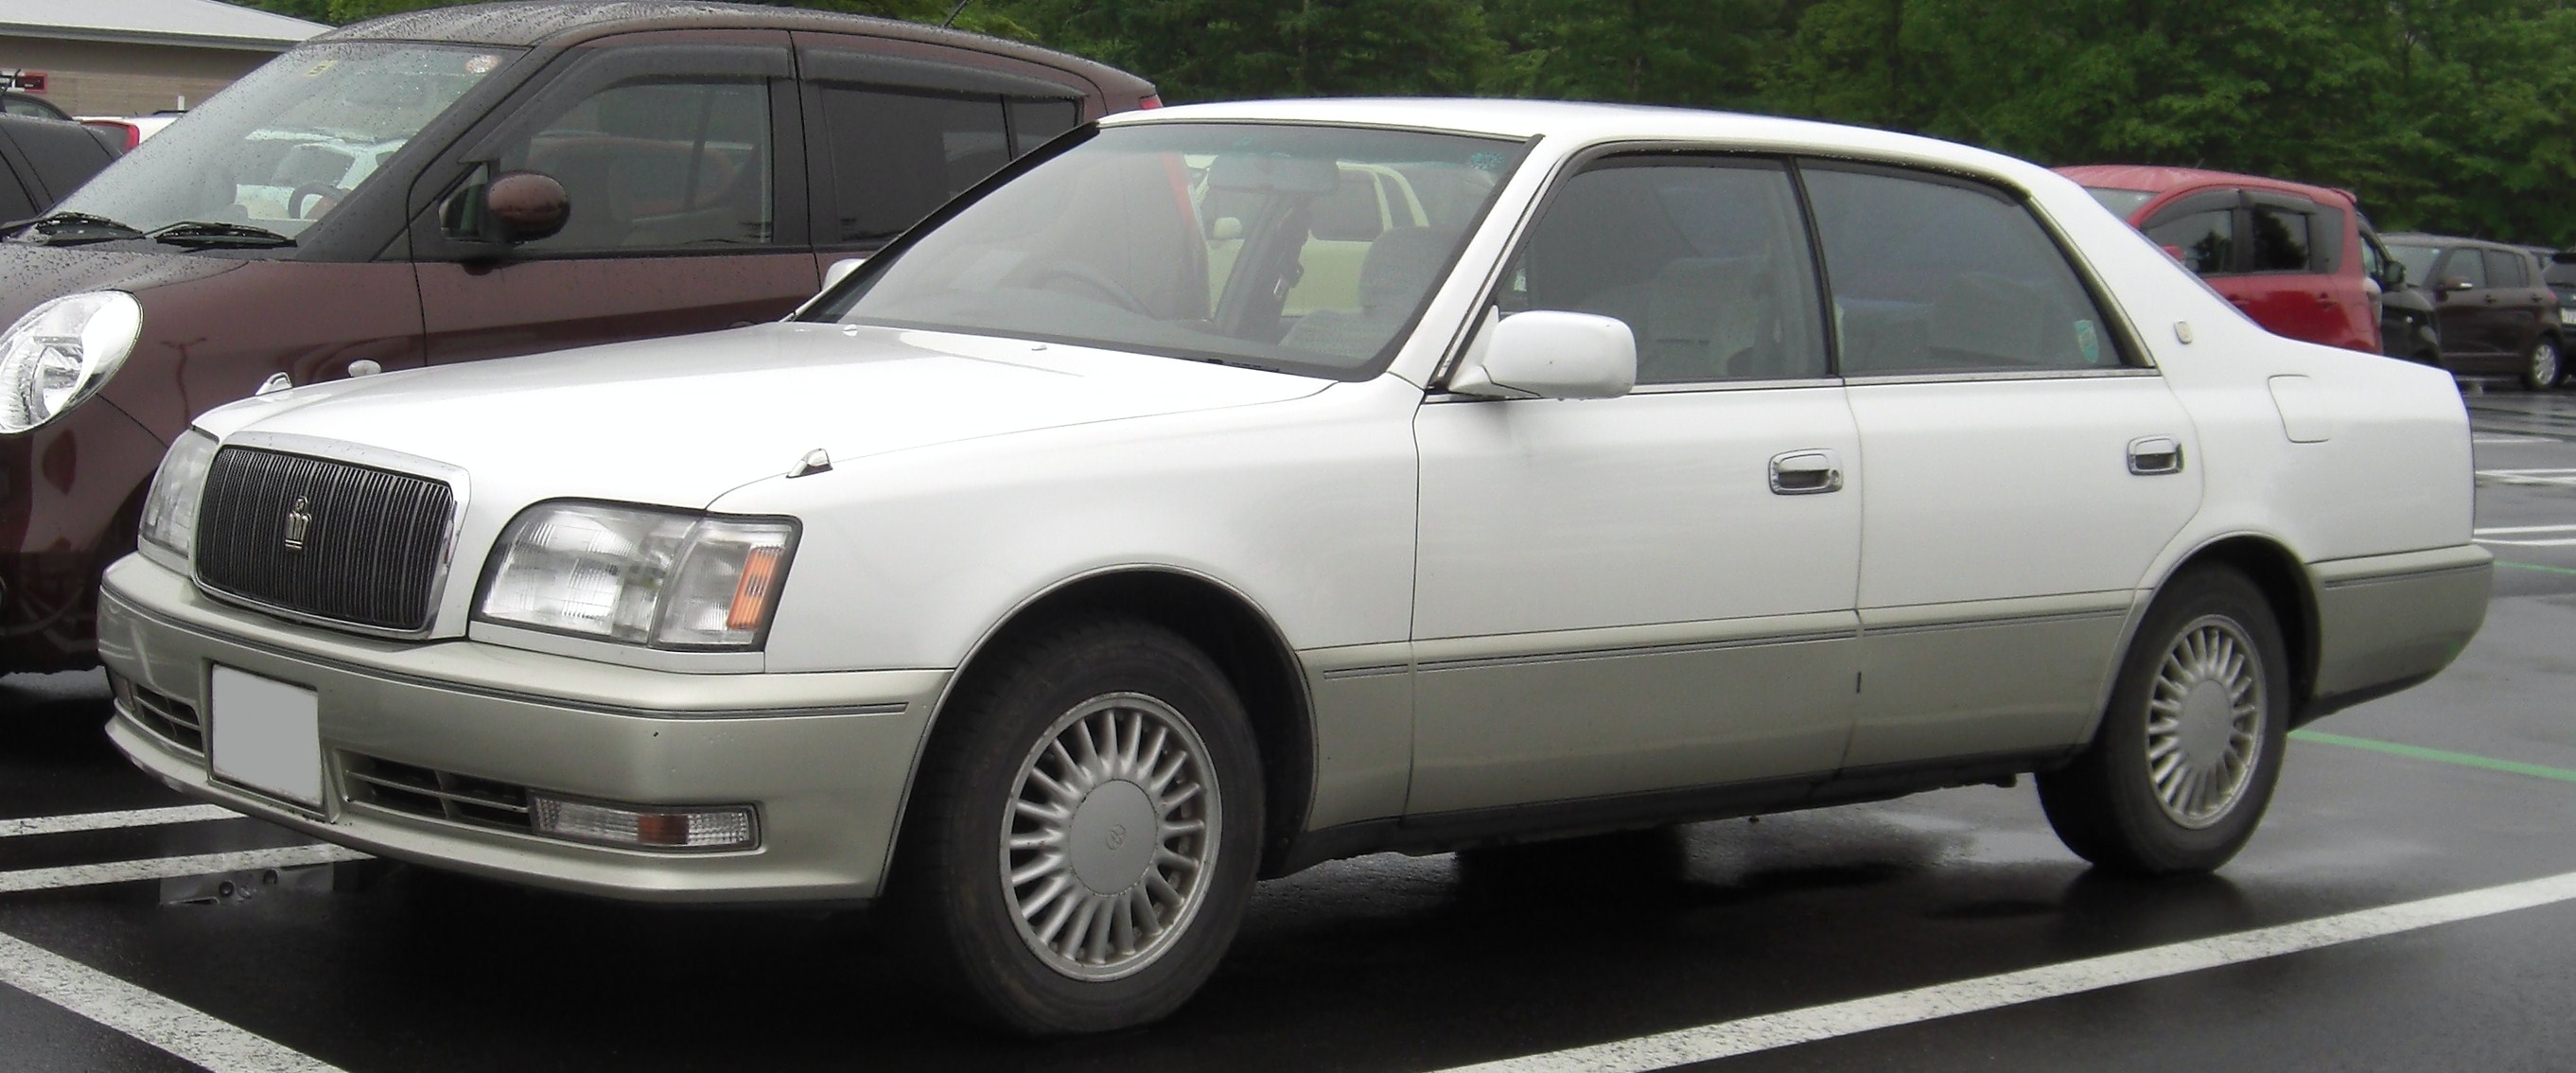 Toyota Crown Majesta I (S140) 1991 - 1995 Sedan #6